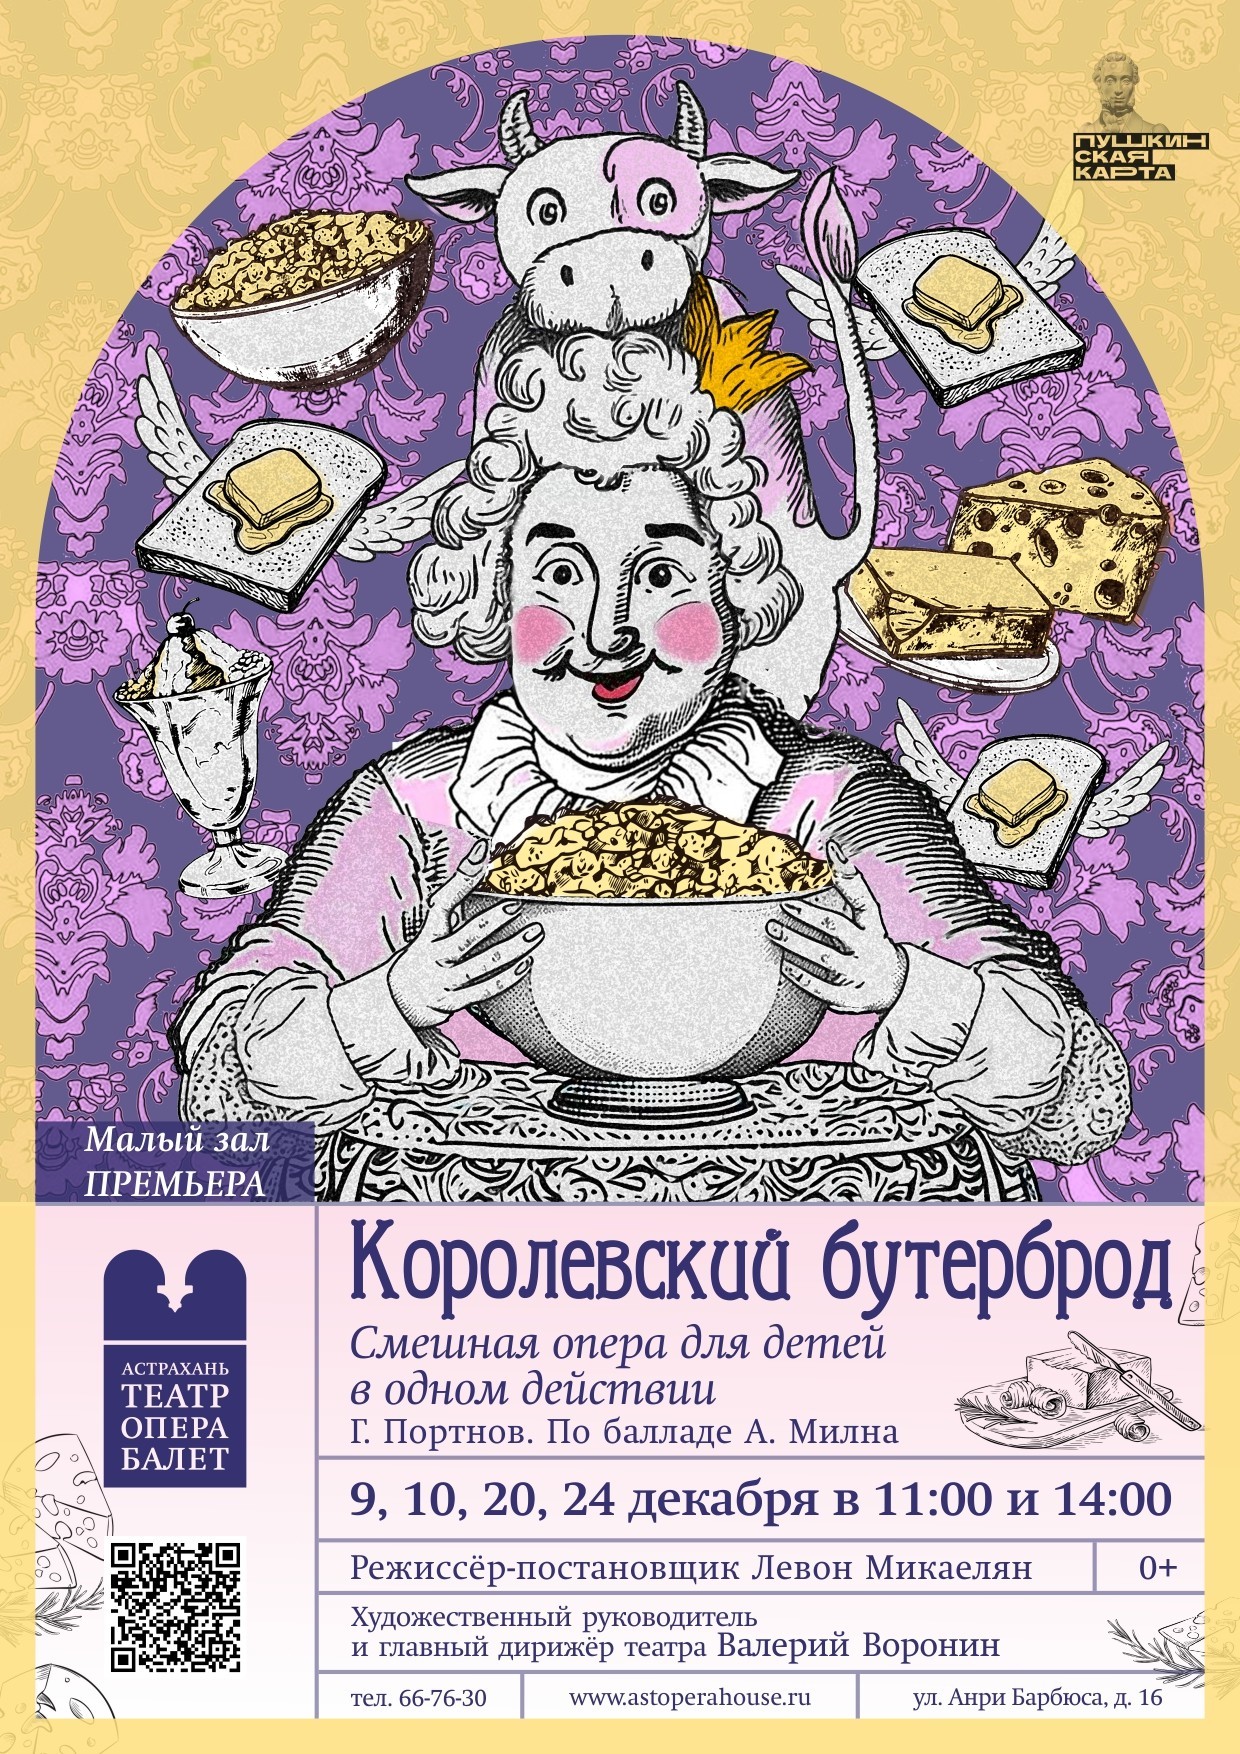 Астраханский театр оперы и балета представляет веселую и смешную оперу для самых маленьких!